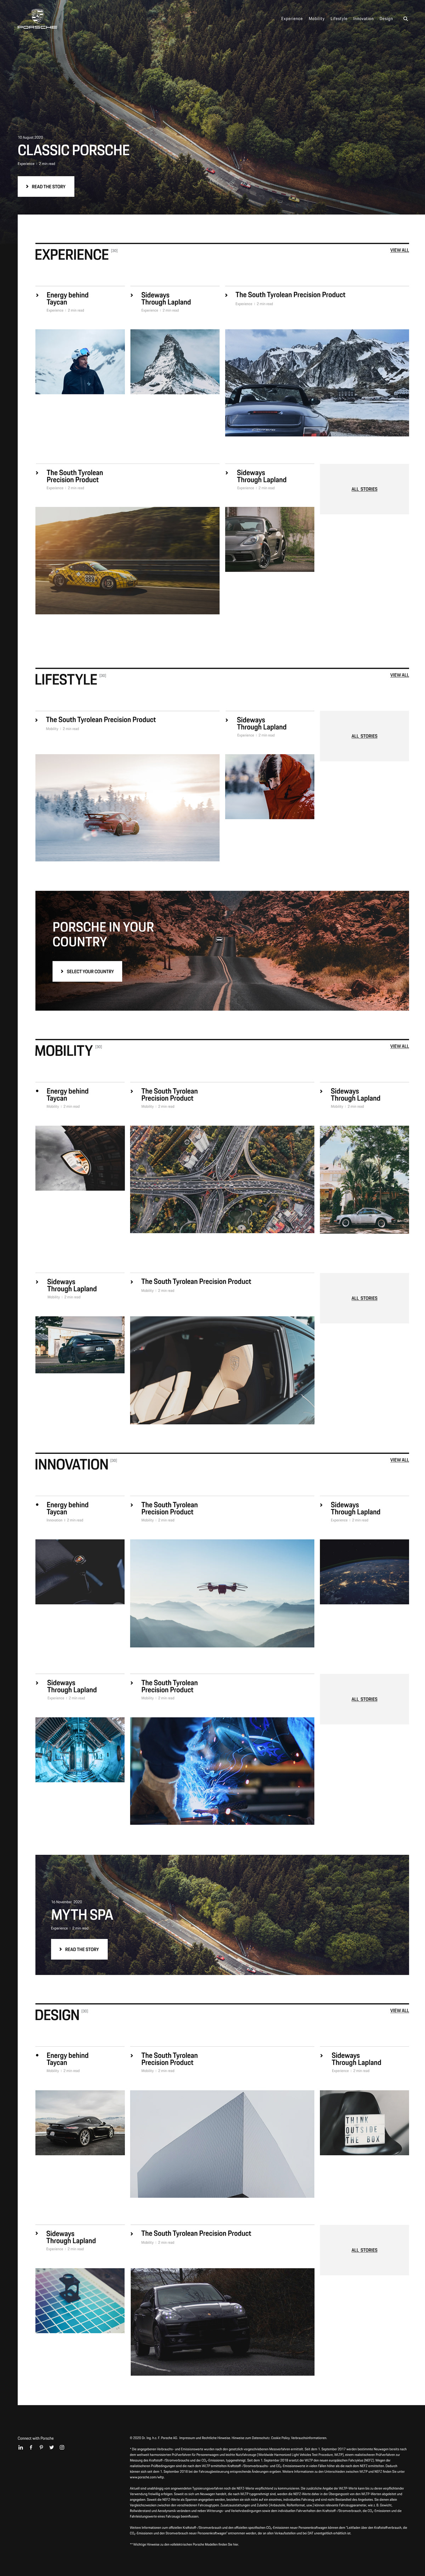 magazine online Porsche design UI ux